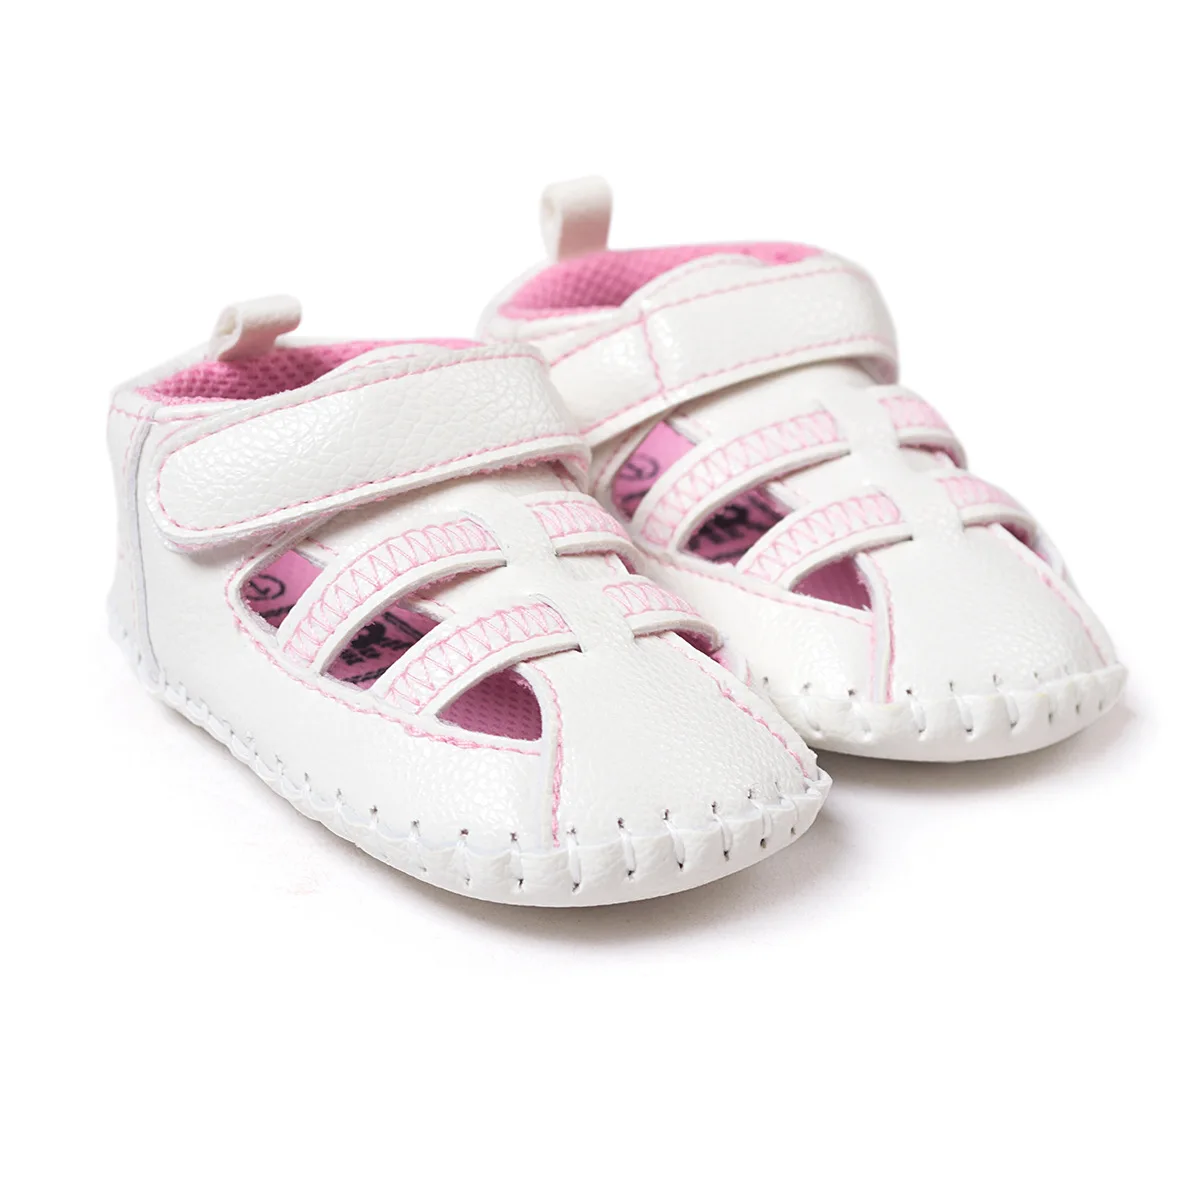 2019 летние детские обувь для новорожденных обувь для малышей девочек маленьких мальчиков летние кожаные забивать мягкие Bebe пинетки